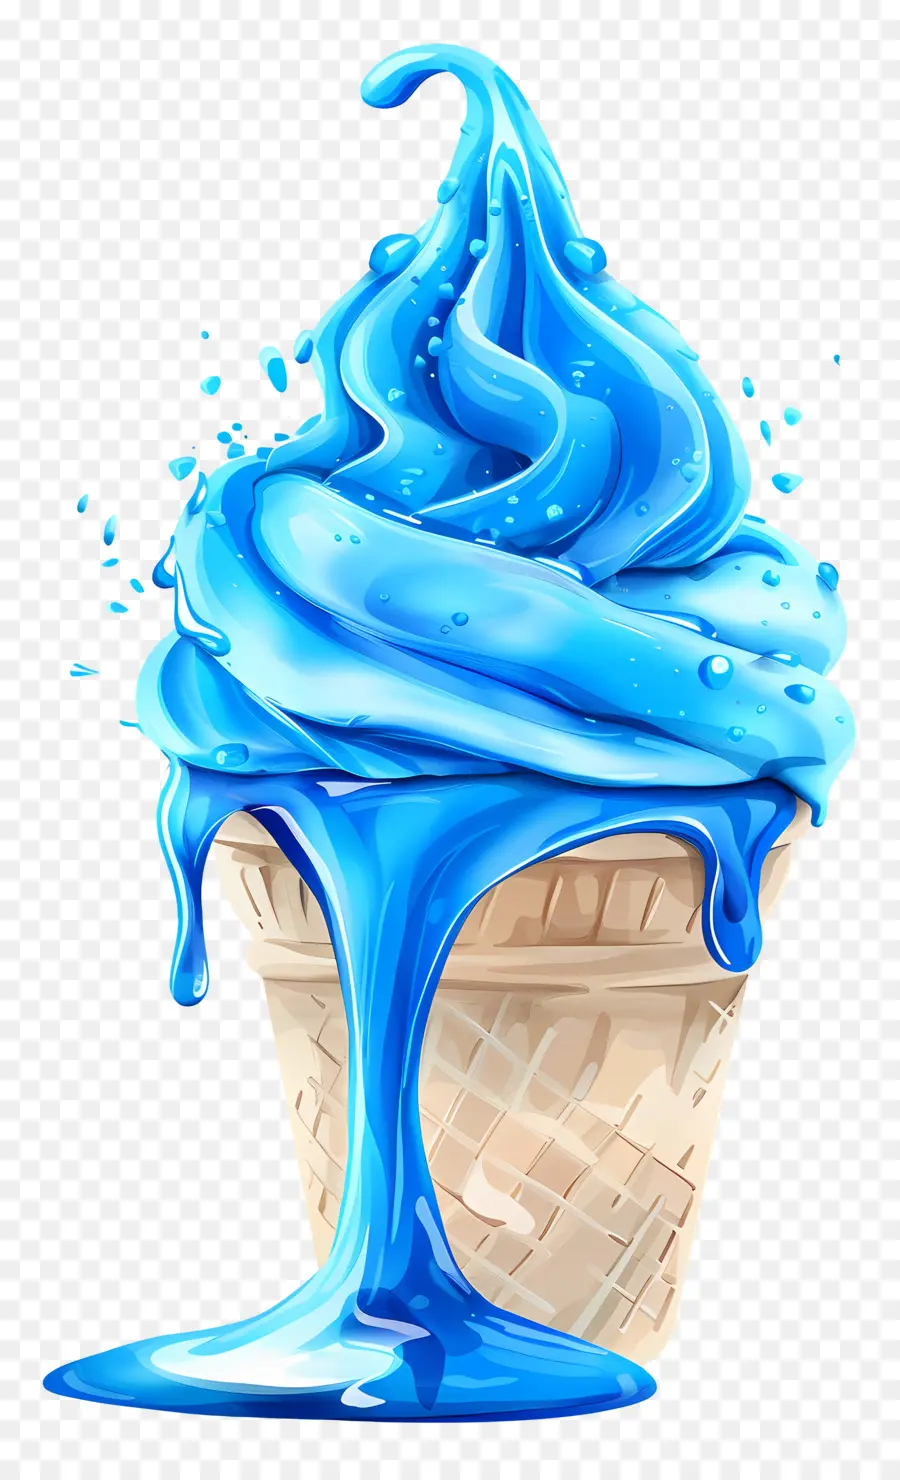 Kem xanh kem màu xanh kem tráng miệng ngọt ngào điều trị kem hình nón - Kem hình nón màu xanh với mưa phùn lỏng